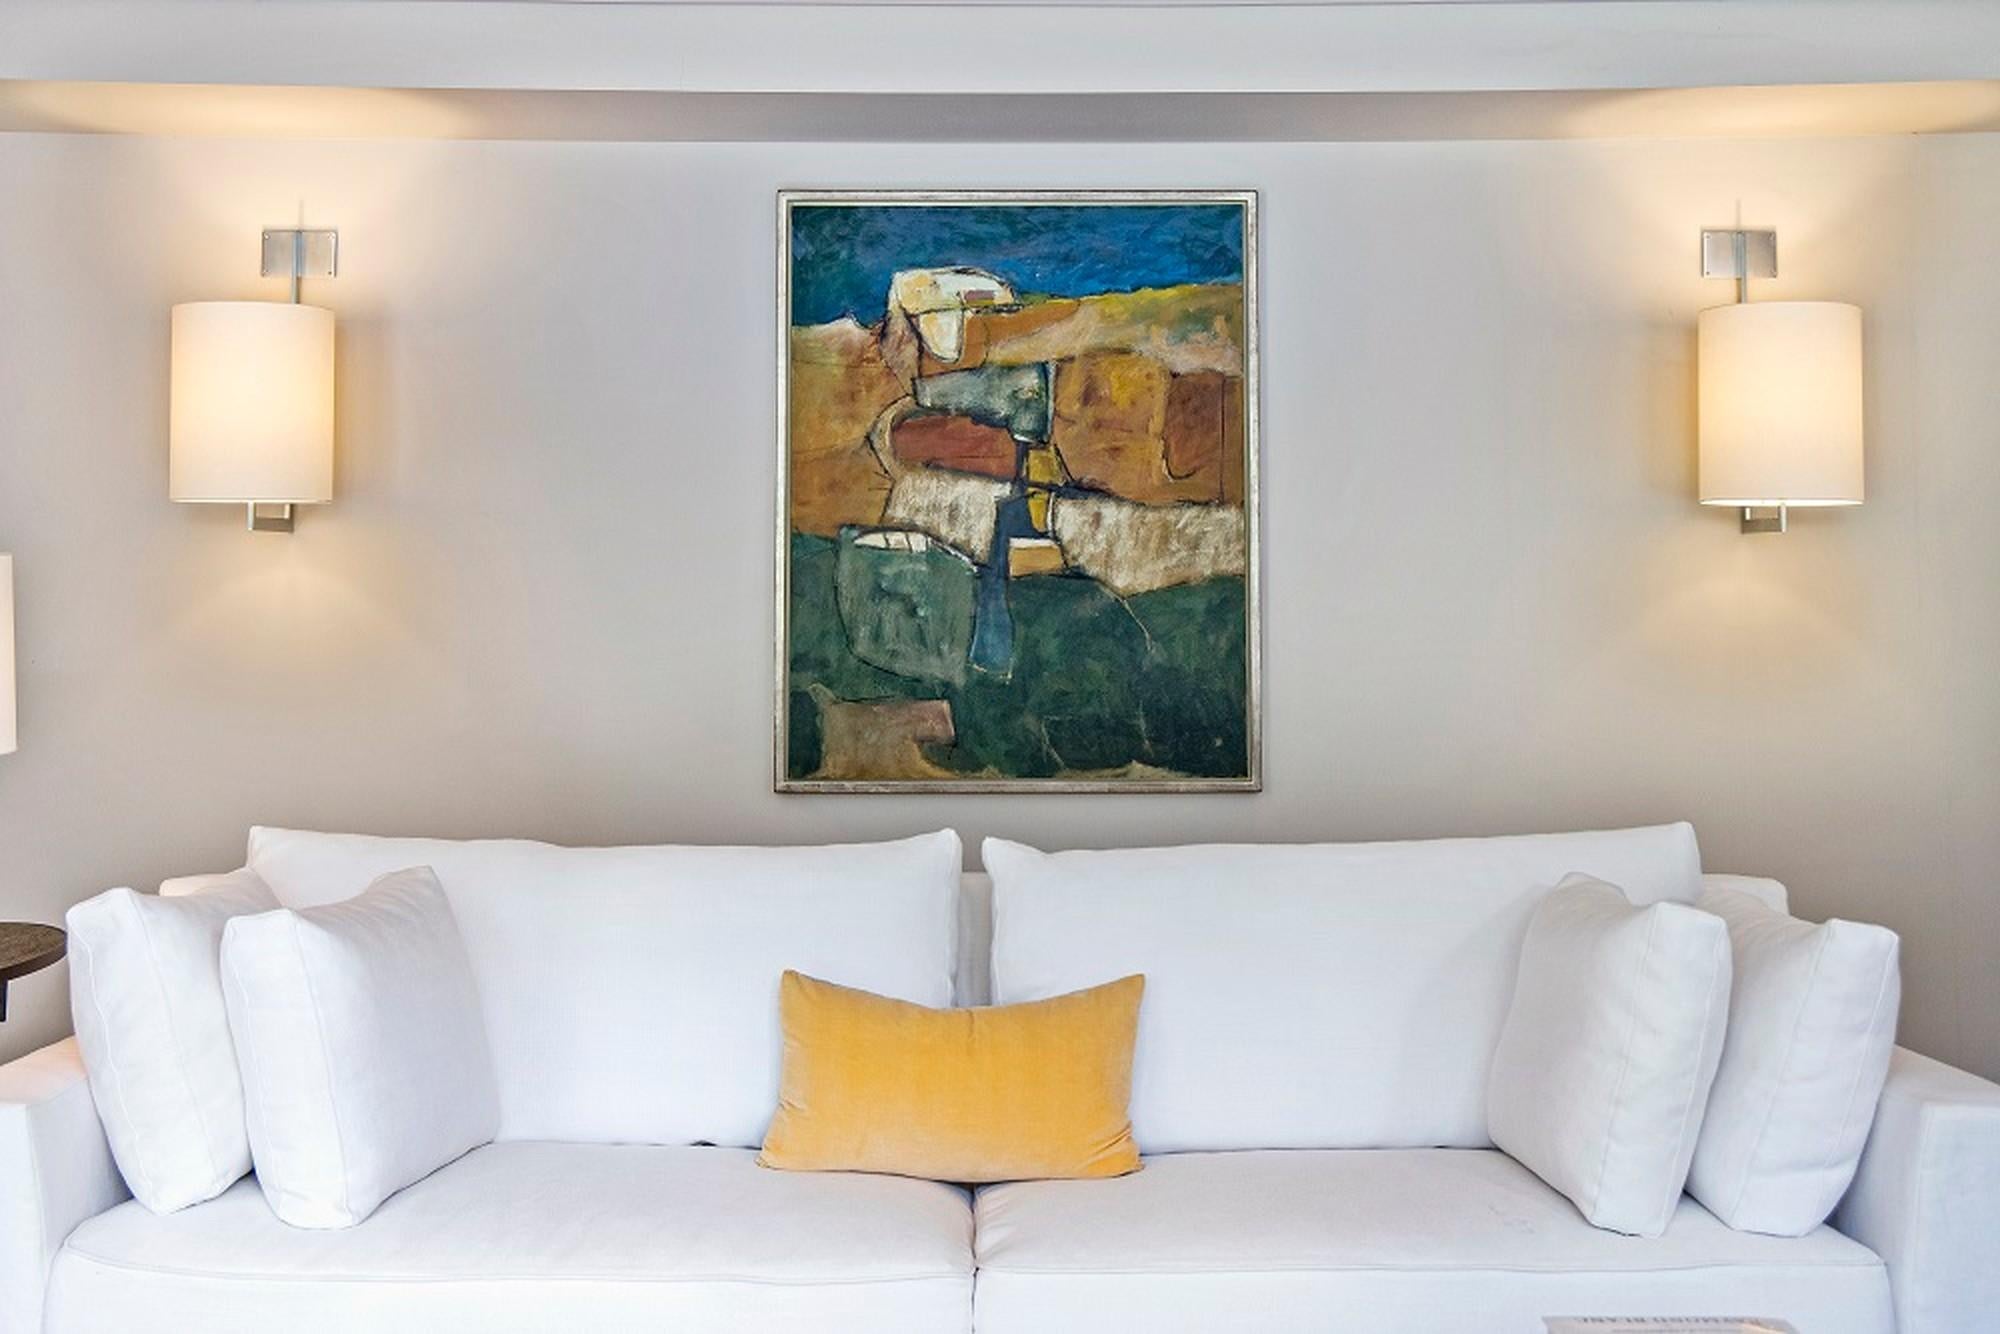 Puglia II ist ein abstraktes Ölgemälde des Künstlers und Musikers John Illsley mit einem Blick aus der Luft. Sie konzentriert sich auf die Landschaft und die Küstenlinien der süditalienischen Region, die den Absatz des italienischen Stiefels